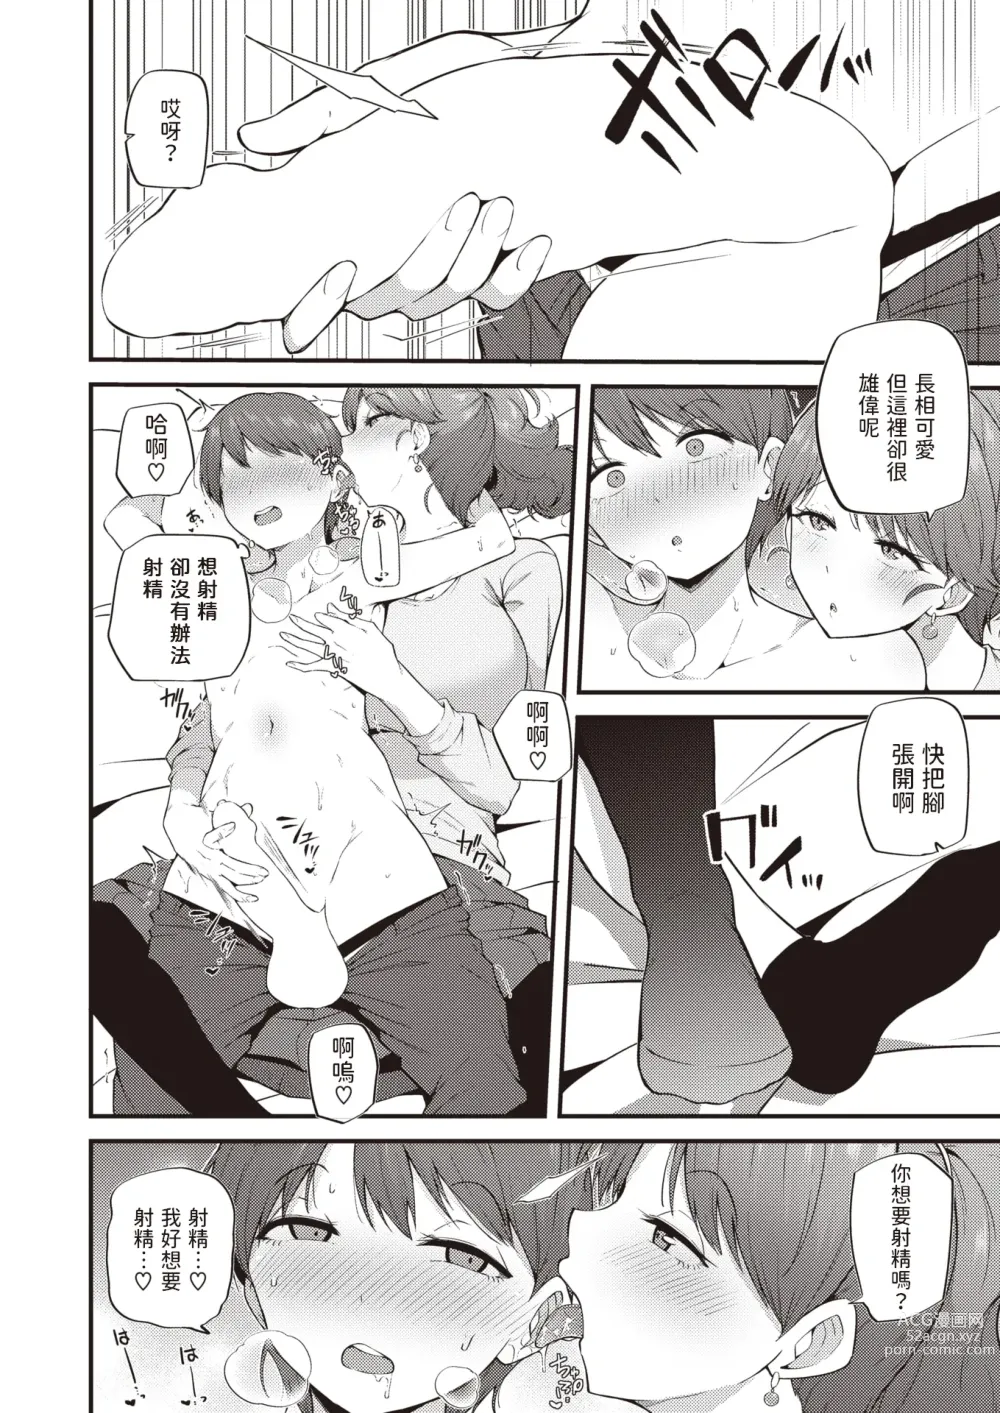 Page 8 of manga Himegoto